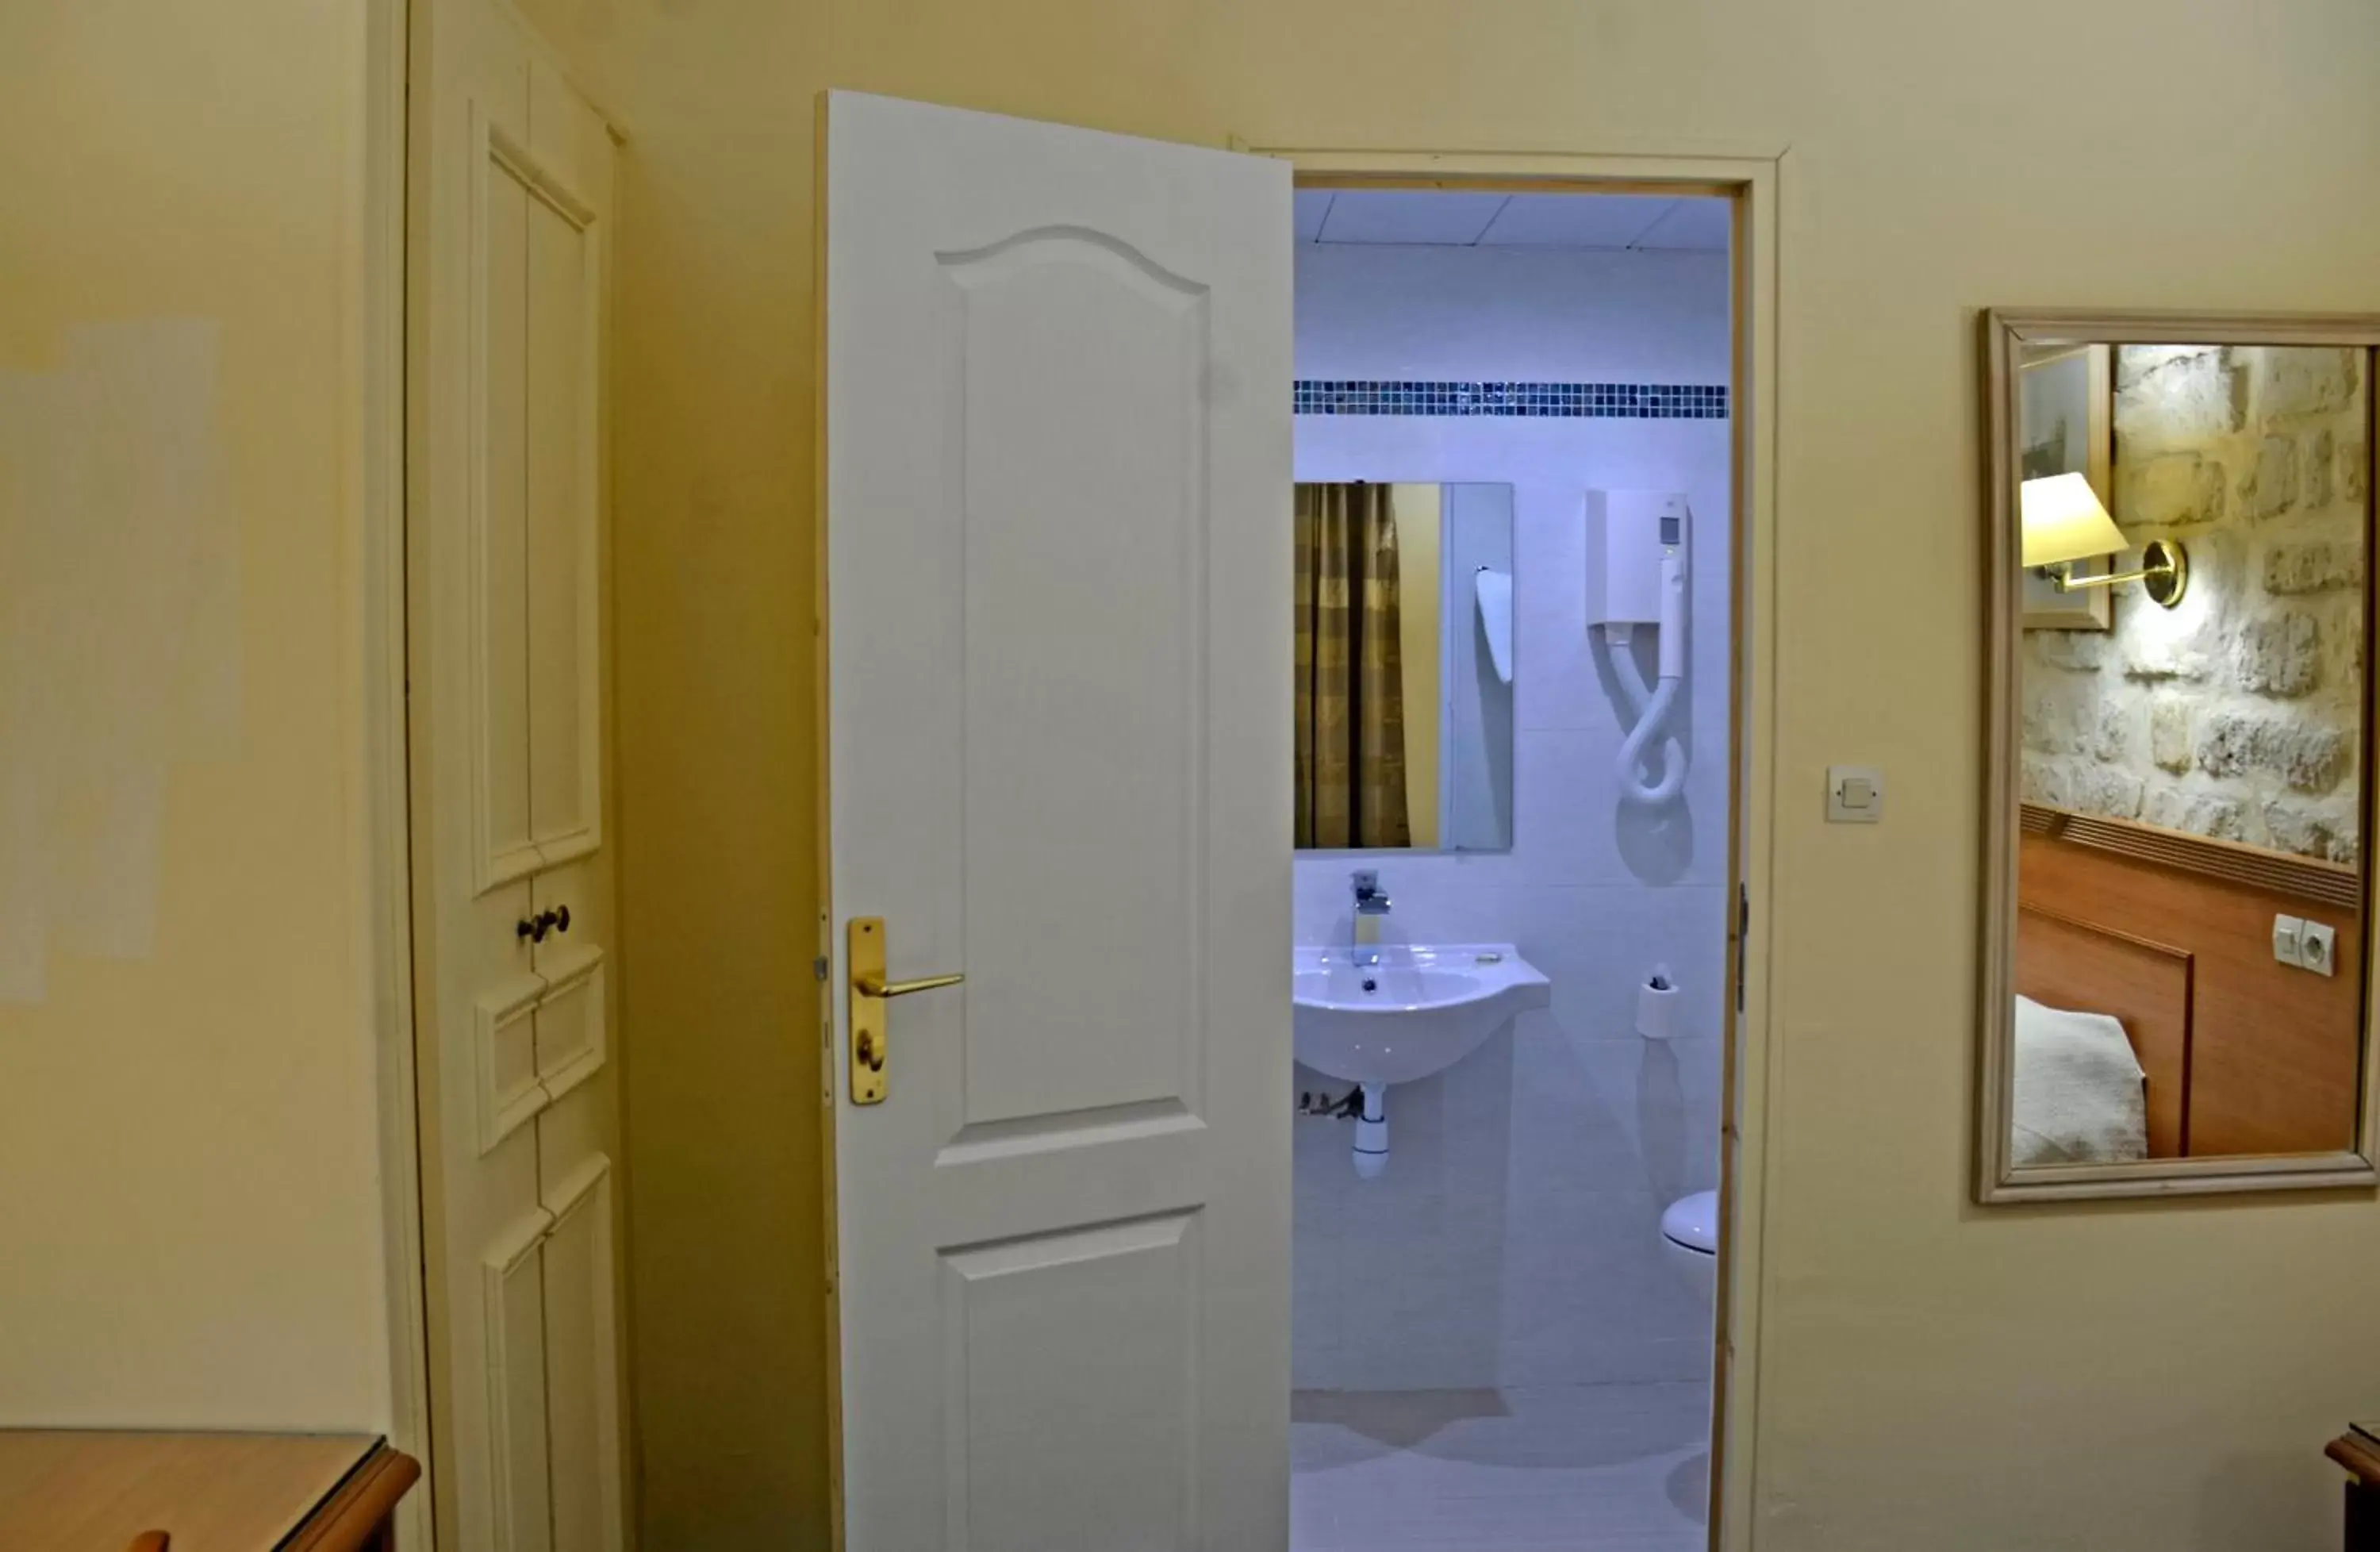 Bathroom in Hotel Havane